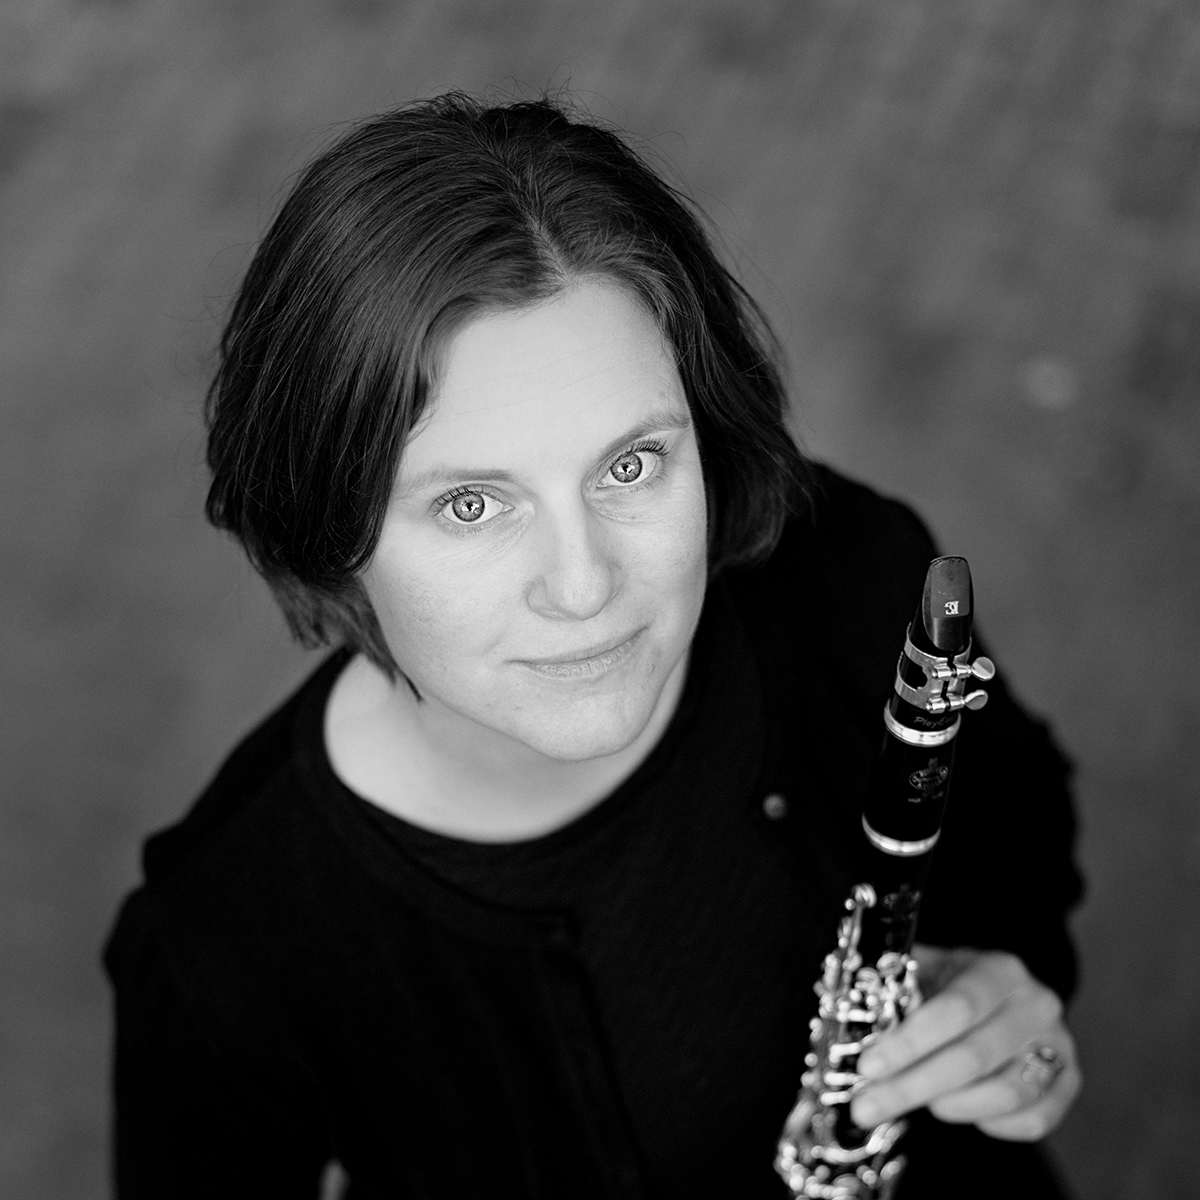 Judith spielt im Klezmerorchester Klarinette und ist vor vielen Jahren in die Klezmerwelt eingetaucht. In ihrem Wohnort Basel initiiert sie Treffen der "Open Klezmer Kapelye" und KlezWeCan-Workshops.